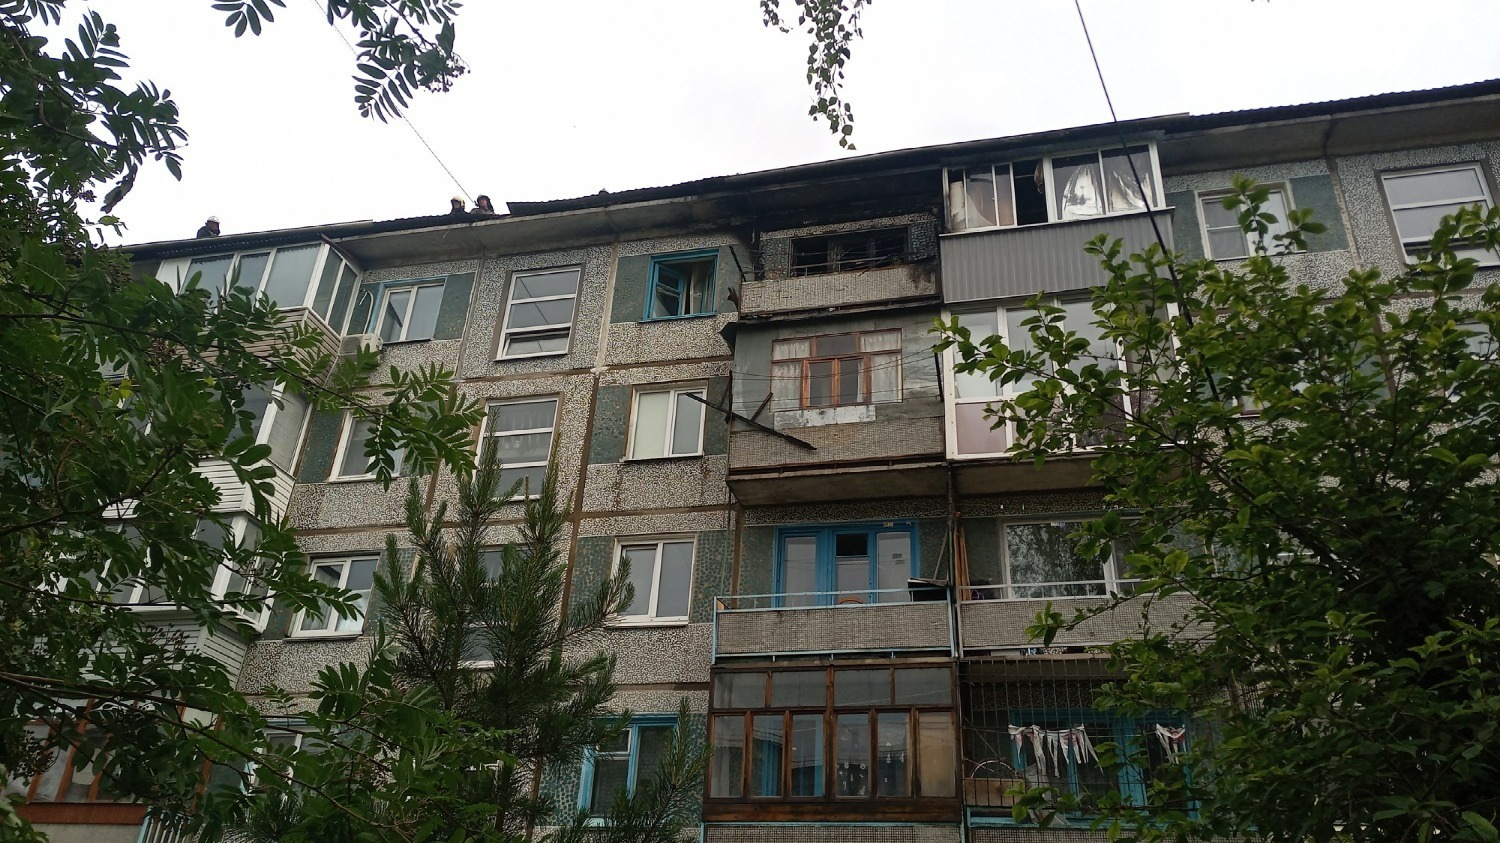 Дом №5 по улице Волгоградская в Омске